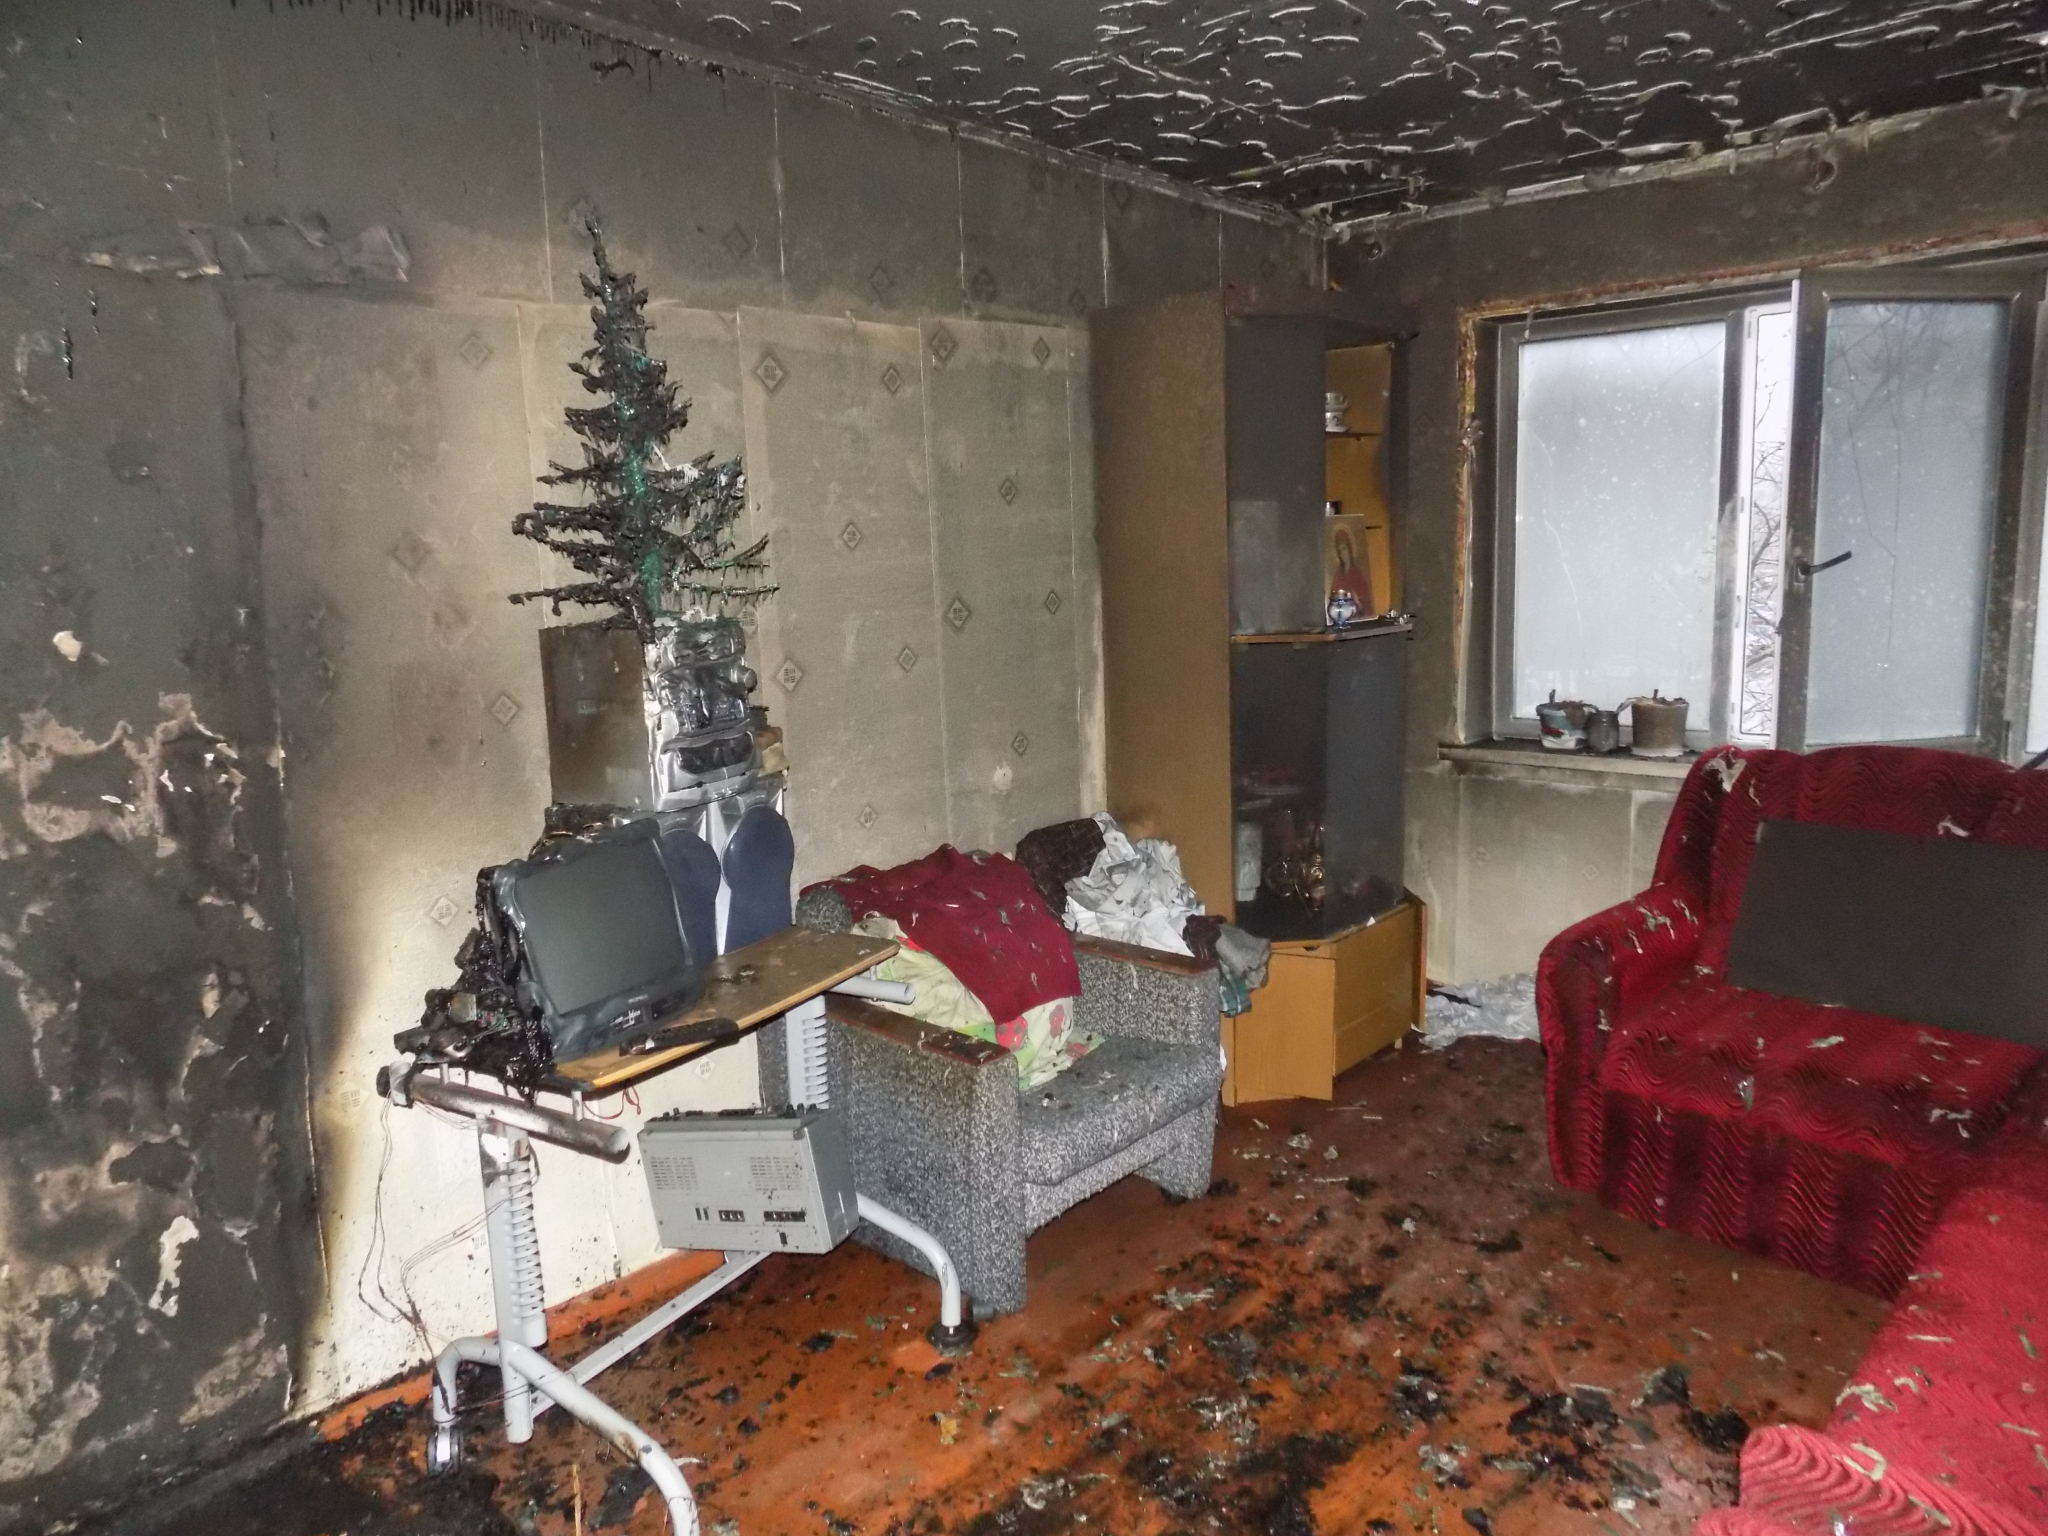 Появились фото эжвинской квартиры, где в пожаре погиб мужчина